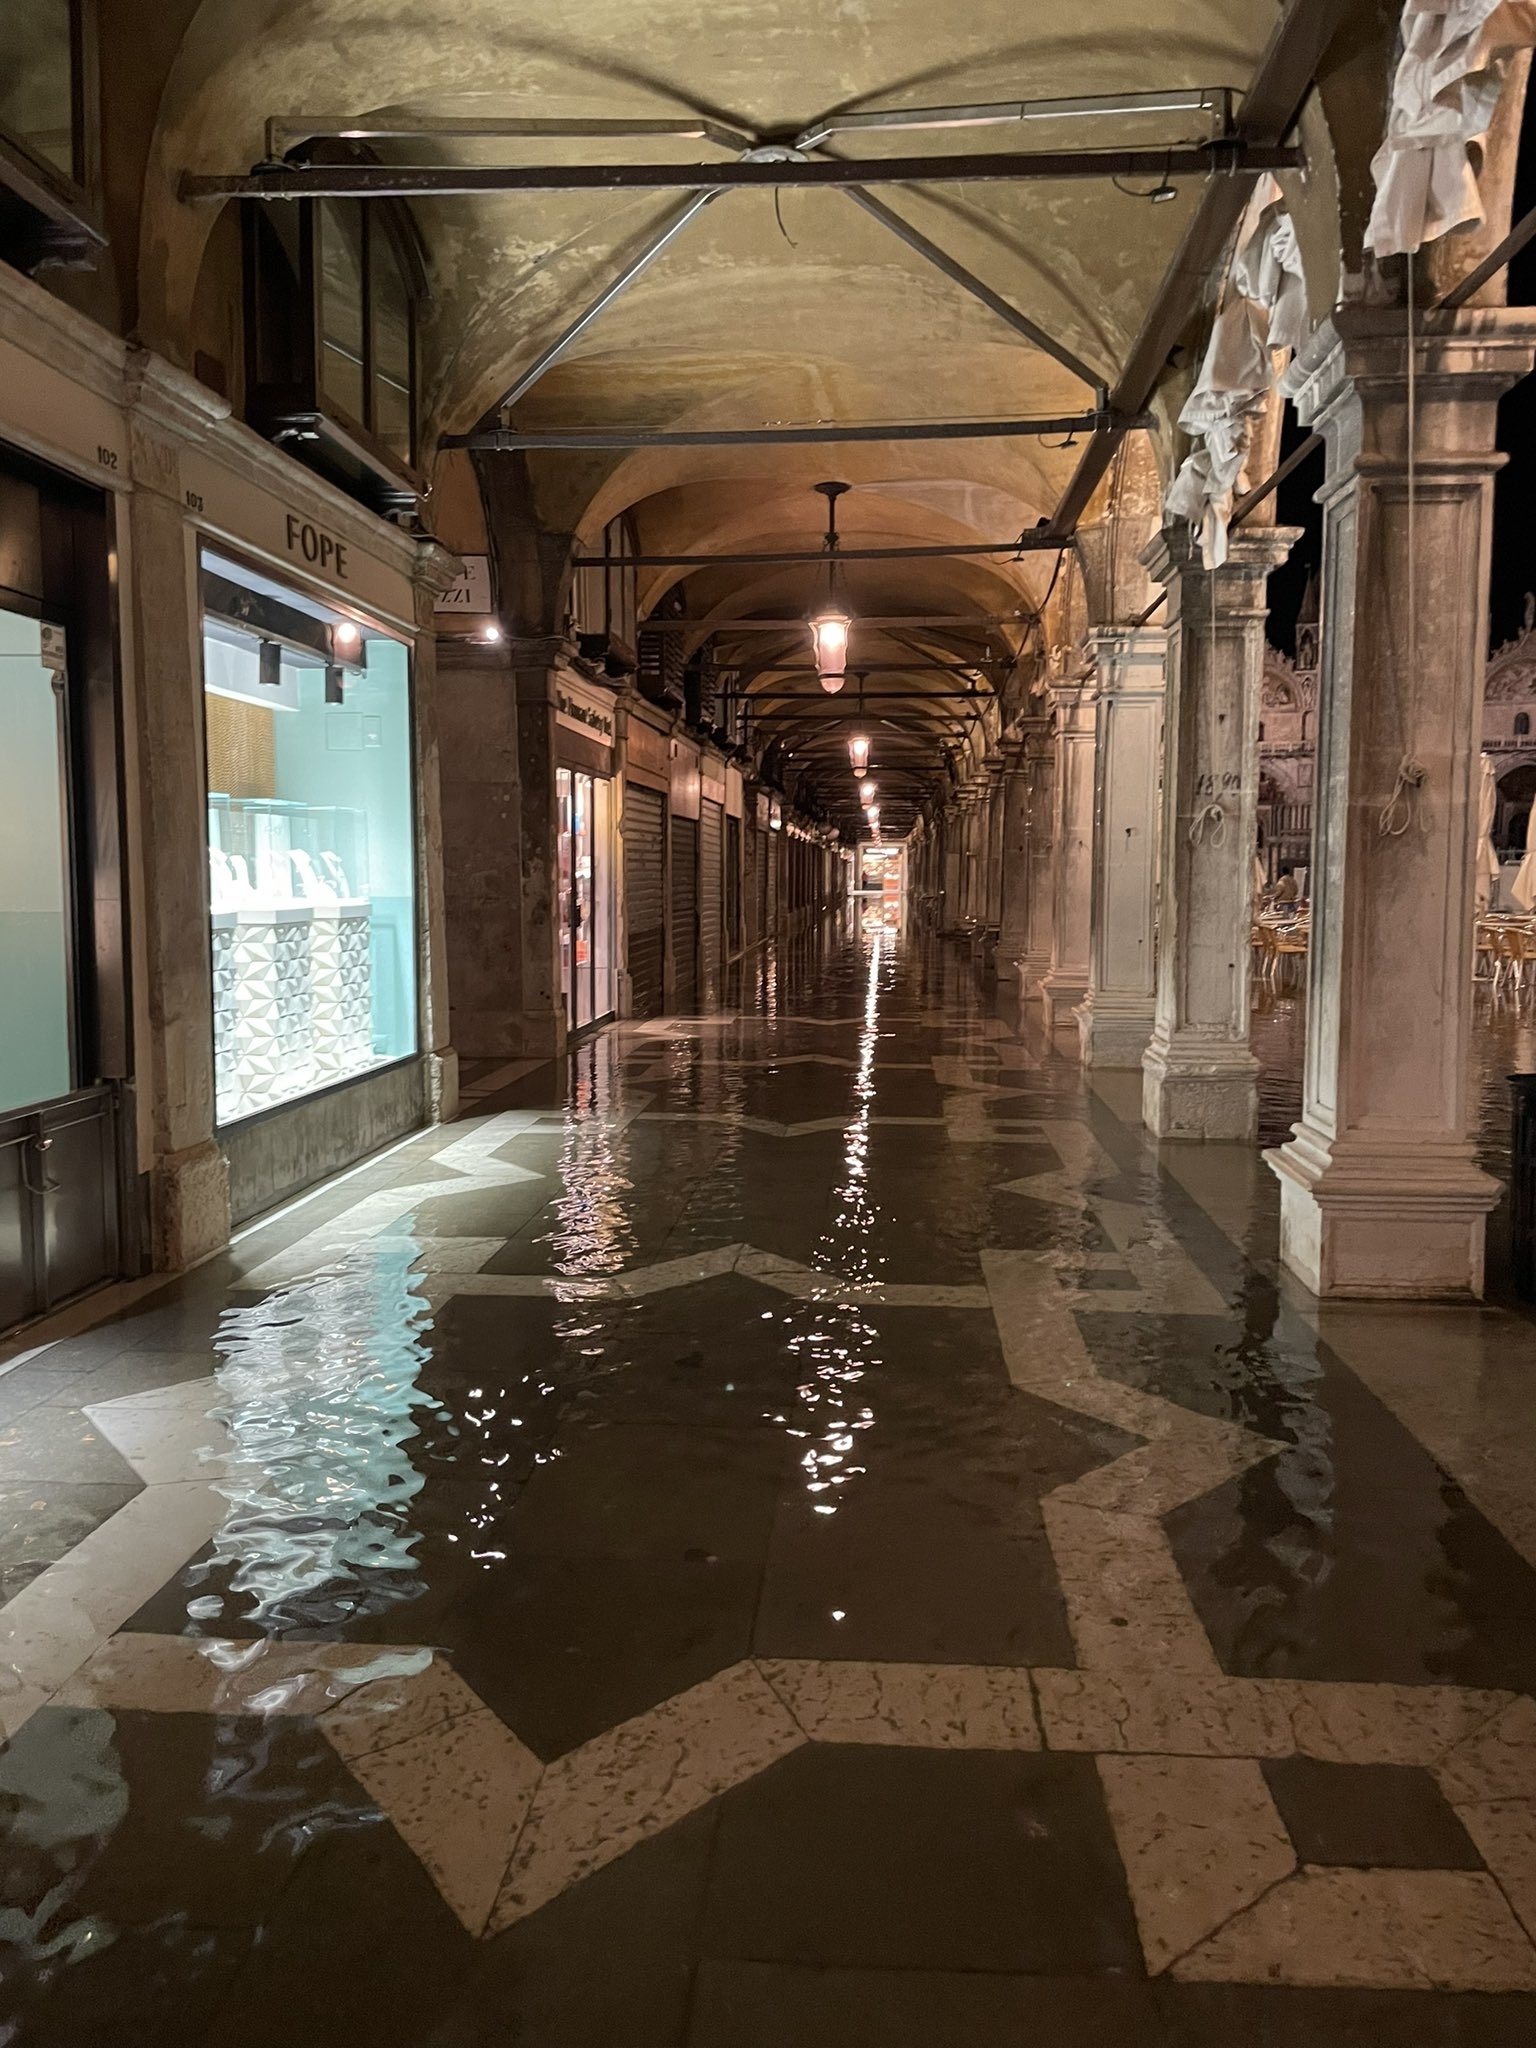 1時間後に水没する」ヴェネツィアの老舗レストランでの衝撃的な体験に大きな反響。前向きに営業を続ける姿に「心を打たれた」と投稿者